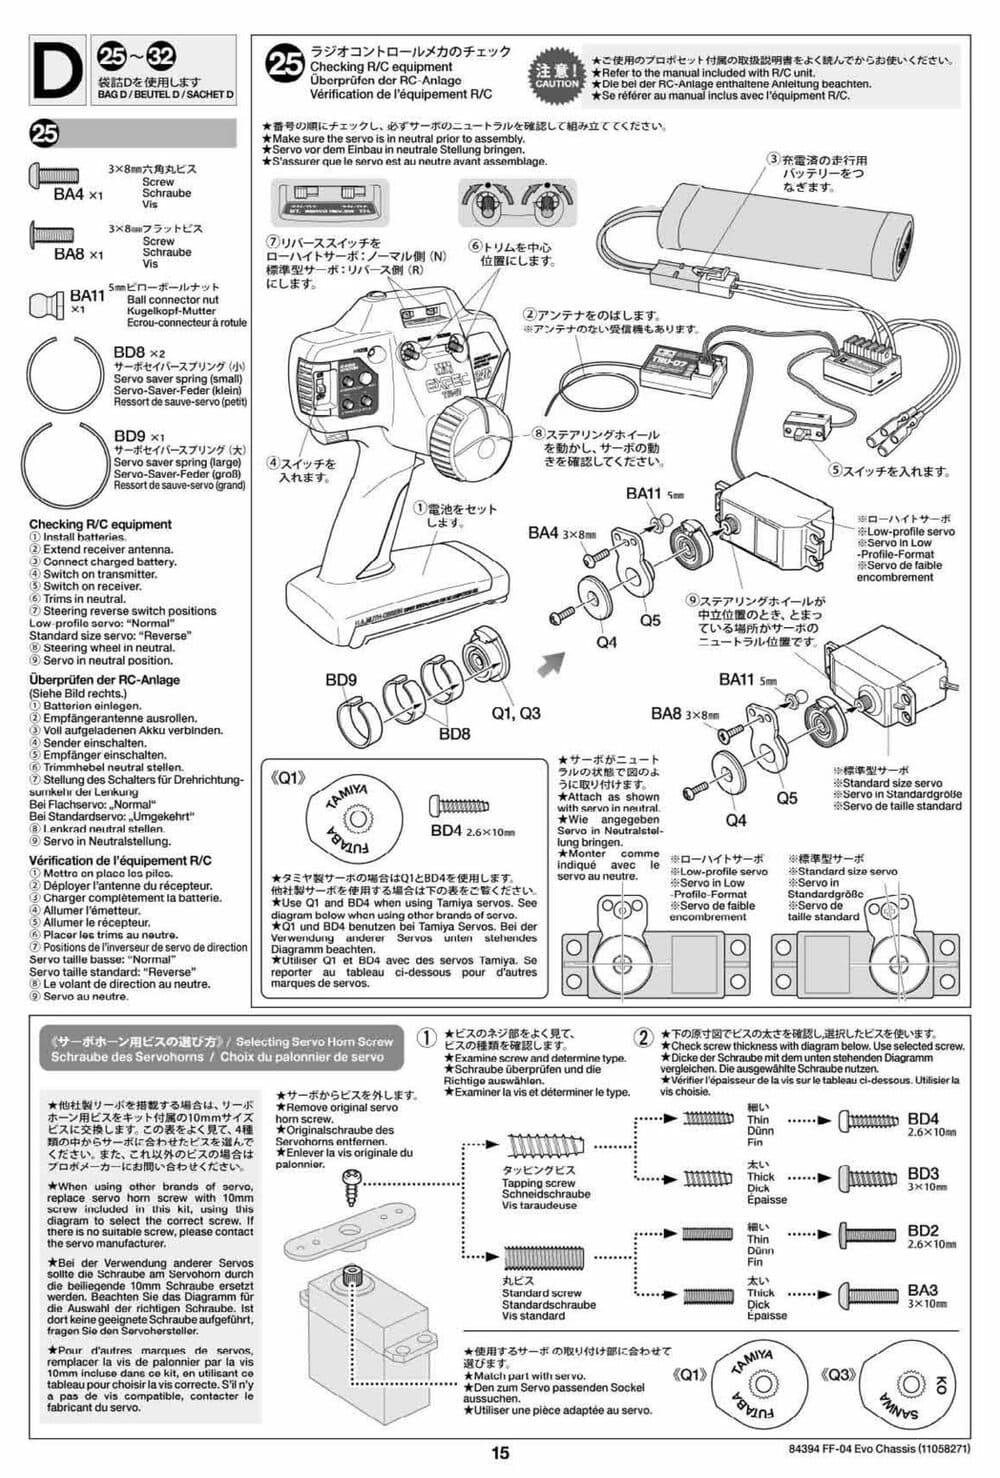 Tamiya - FF-04 Evo Chassis - Manual - Page 15